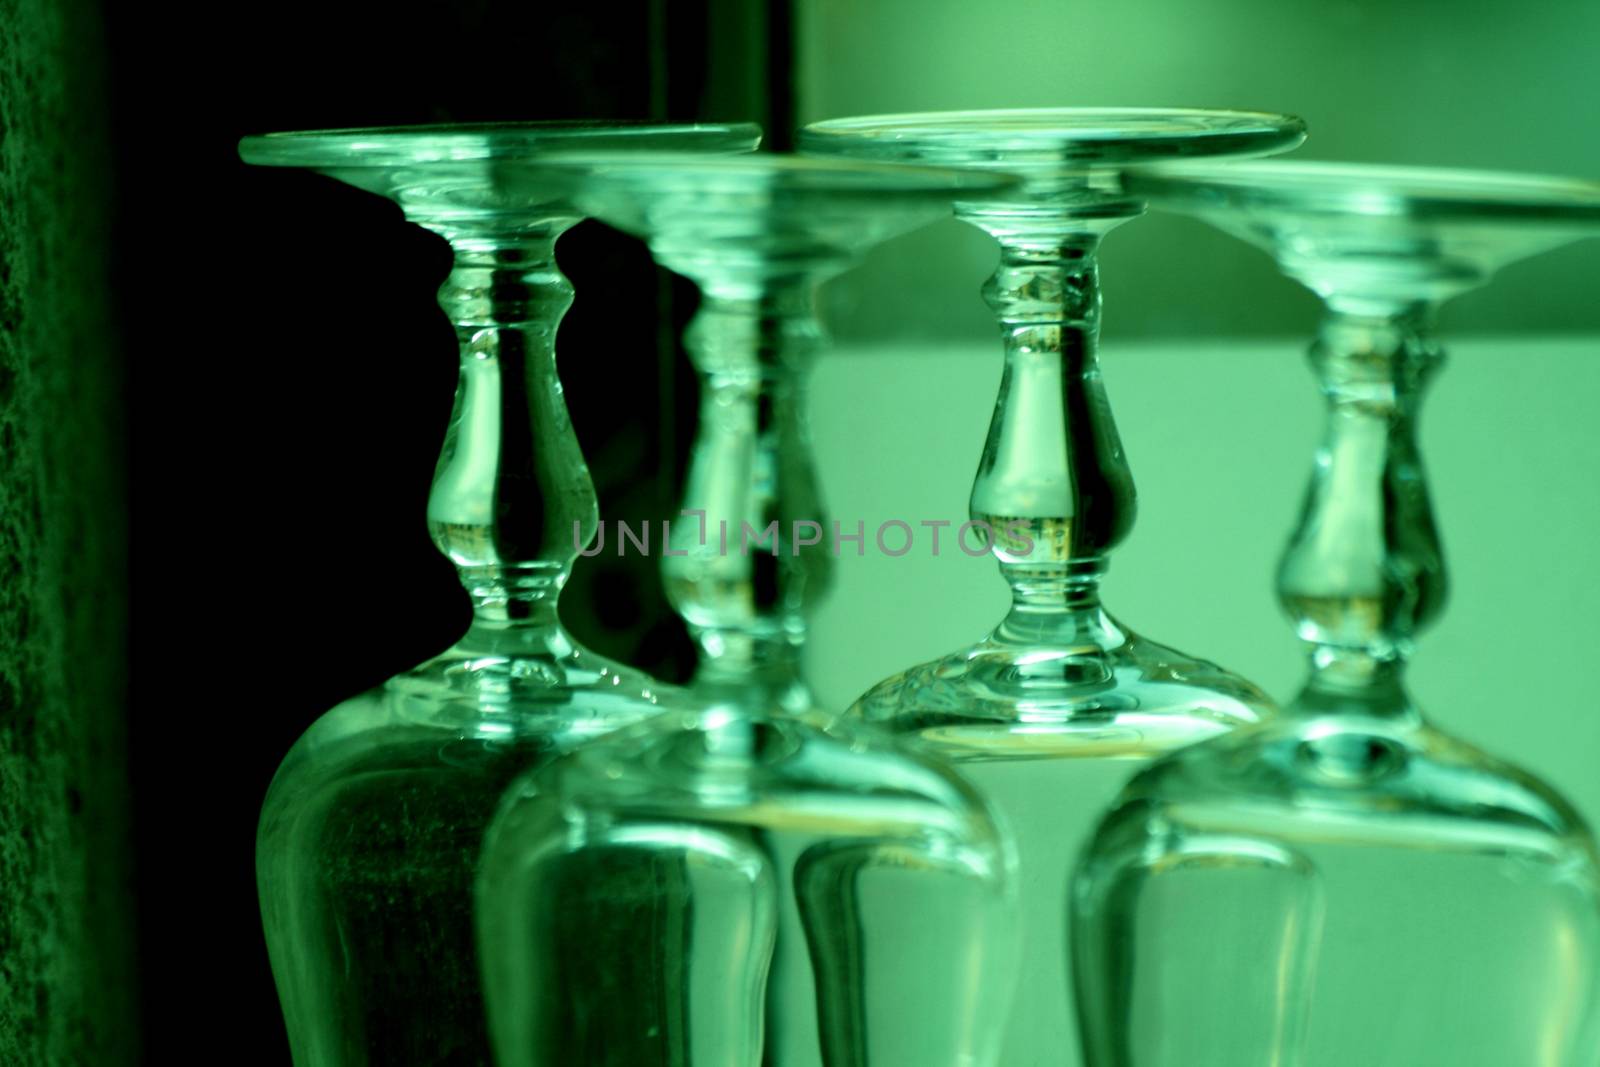 Upturned wine glasses in restaurant bar close-up  by edwardolive